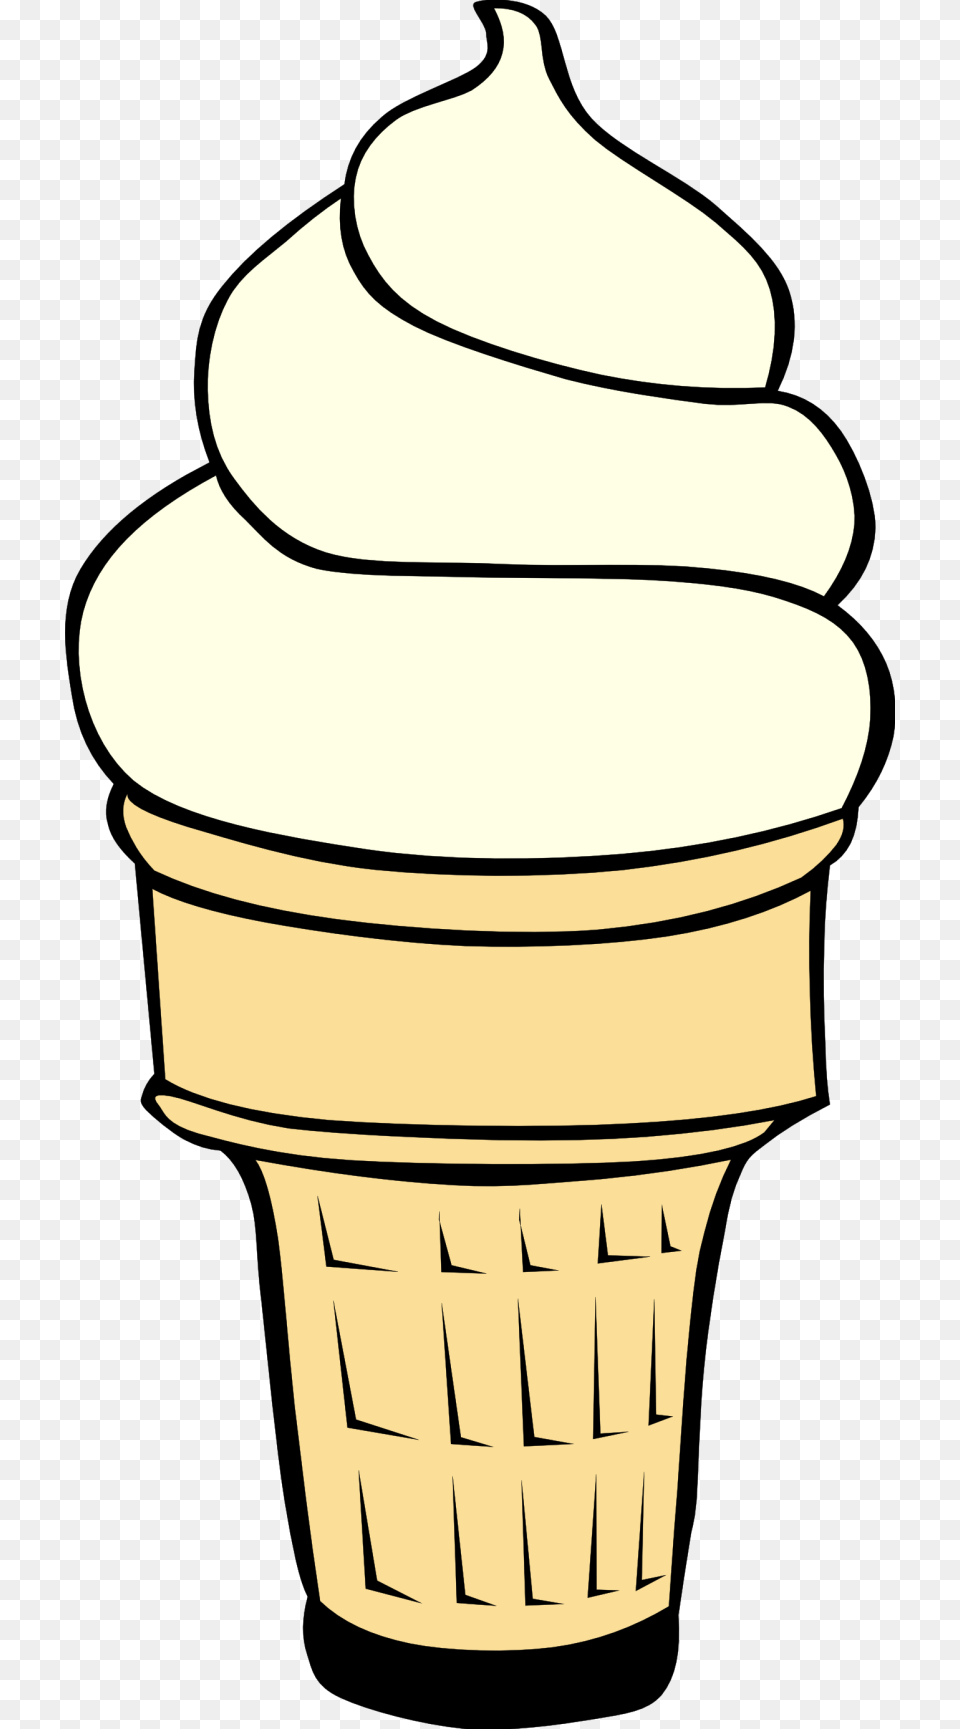 Ice Cream Cone Clip Art, Dessert, Food, Ice Cream, Soft Serve Ice Cream Png Image